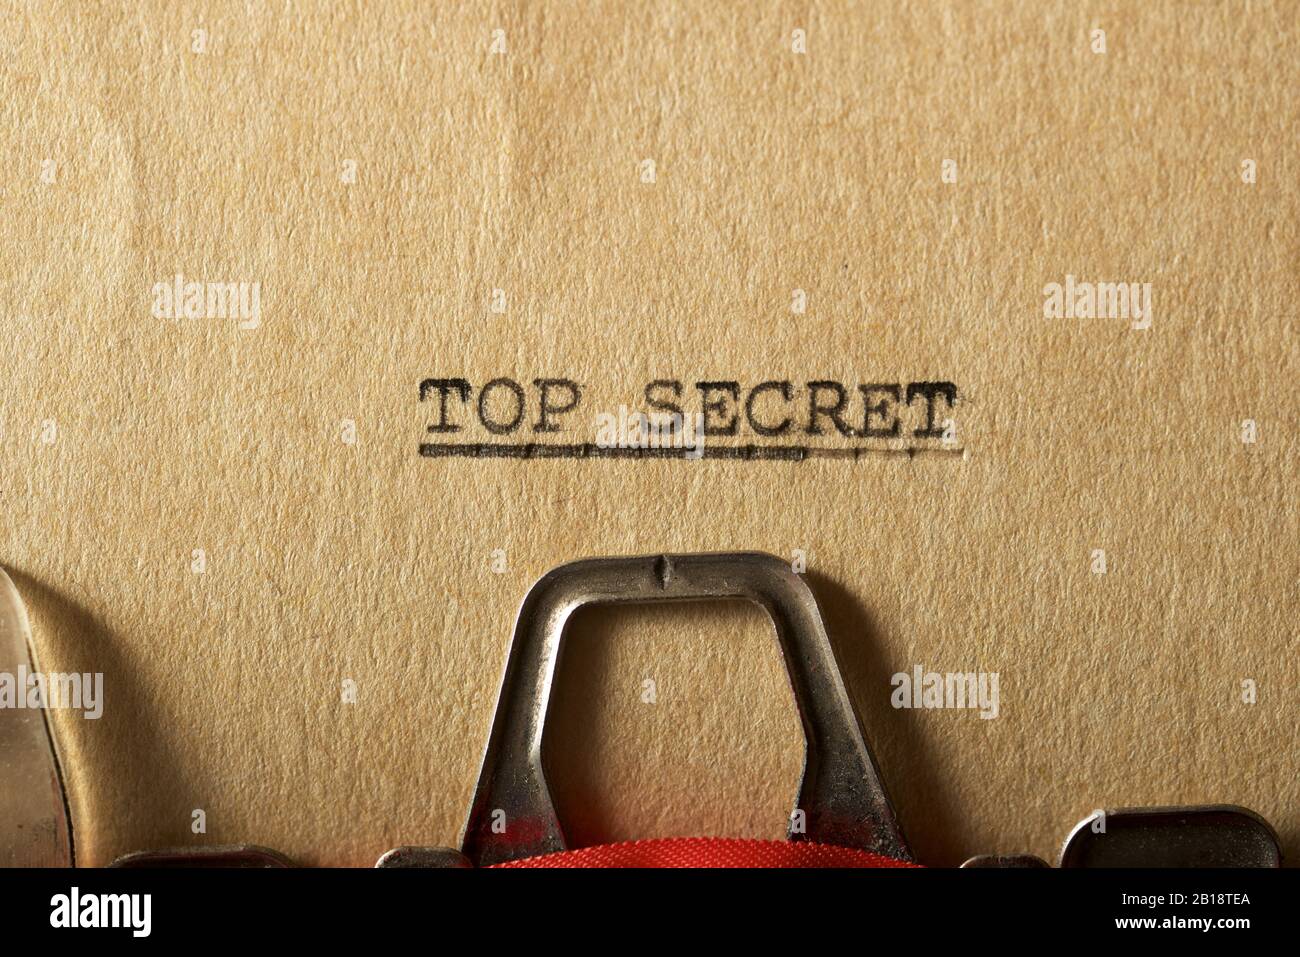 Der Satz, Top Secret, mit einer Schreibmaschine geschrieben. Stockfoto